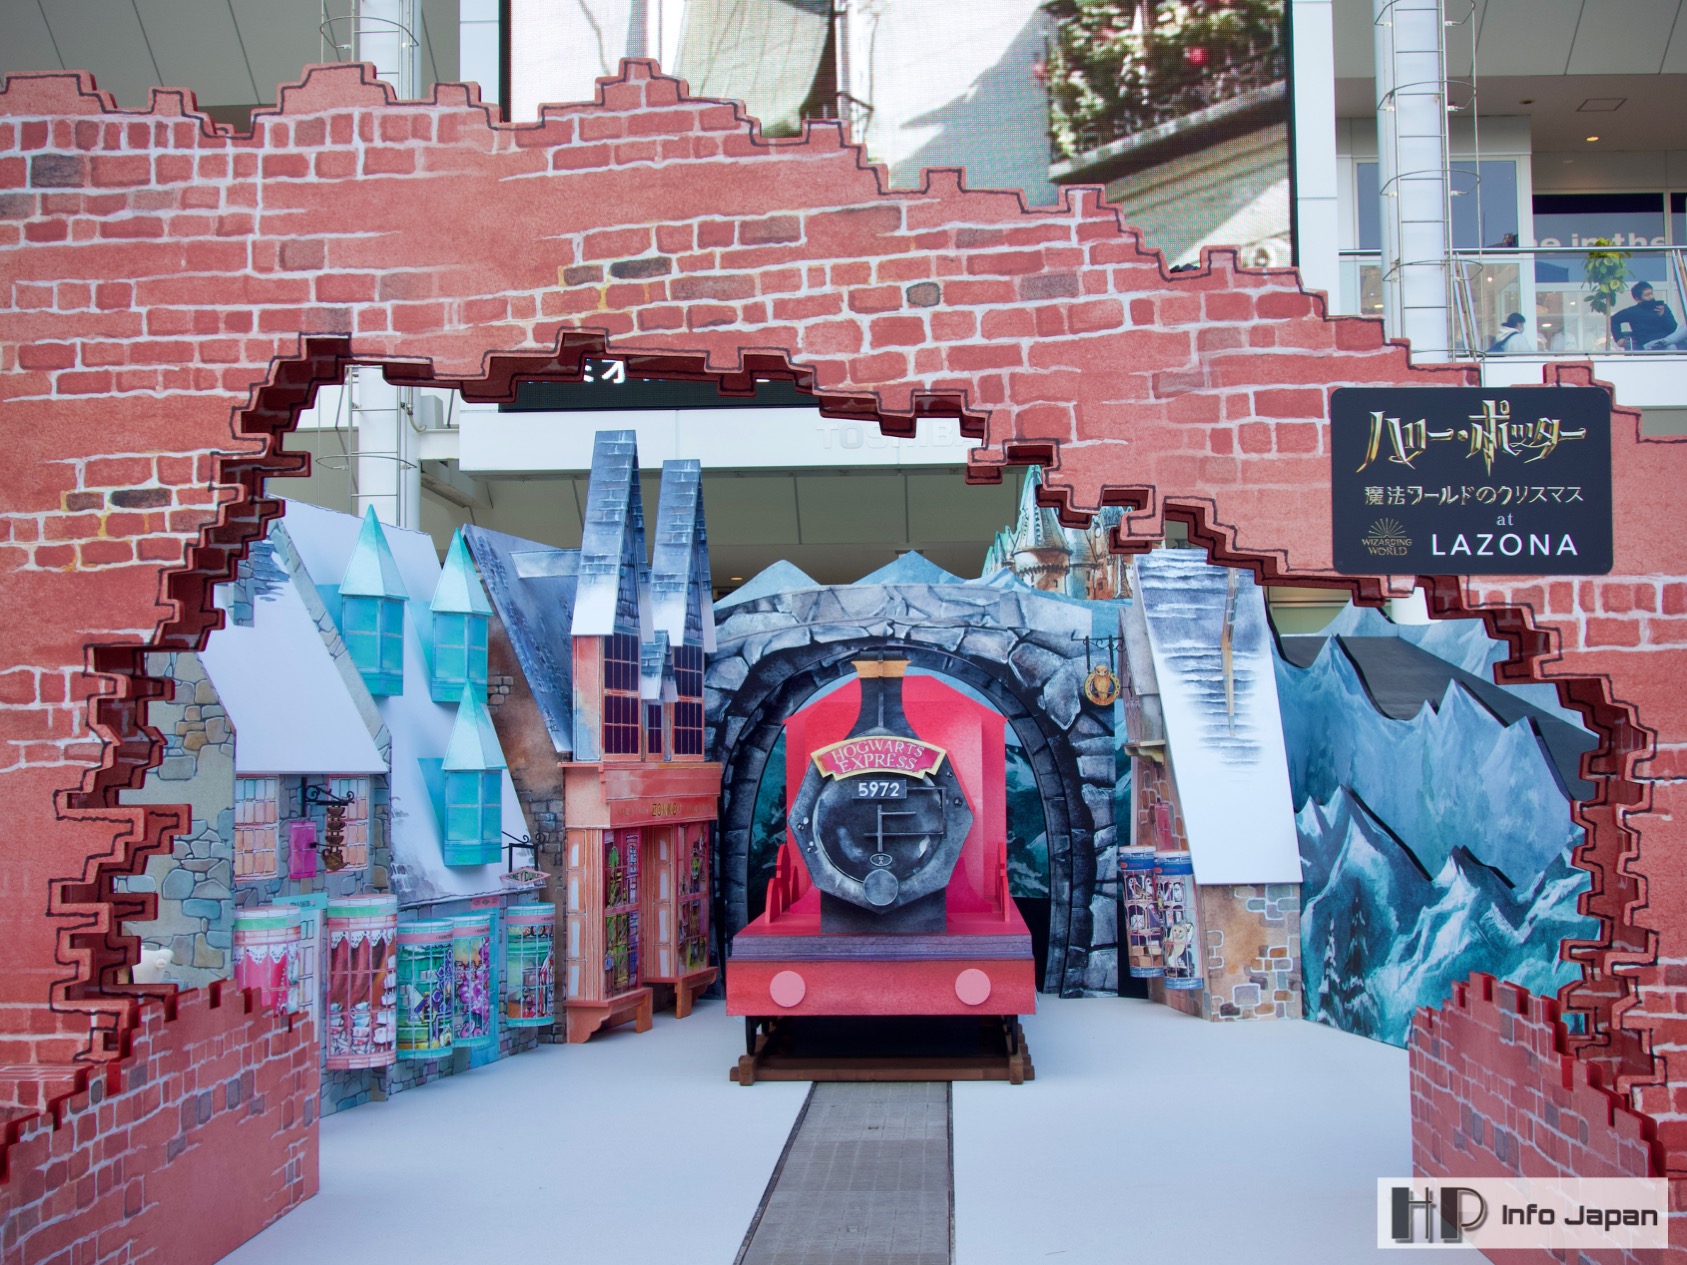 開催初日現地レポ ハリー ポッター 魔法ワールドのクリスマス At Lazona Hp Info Japan